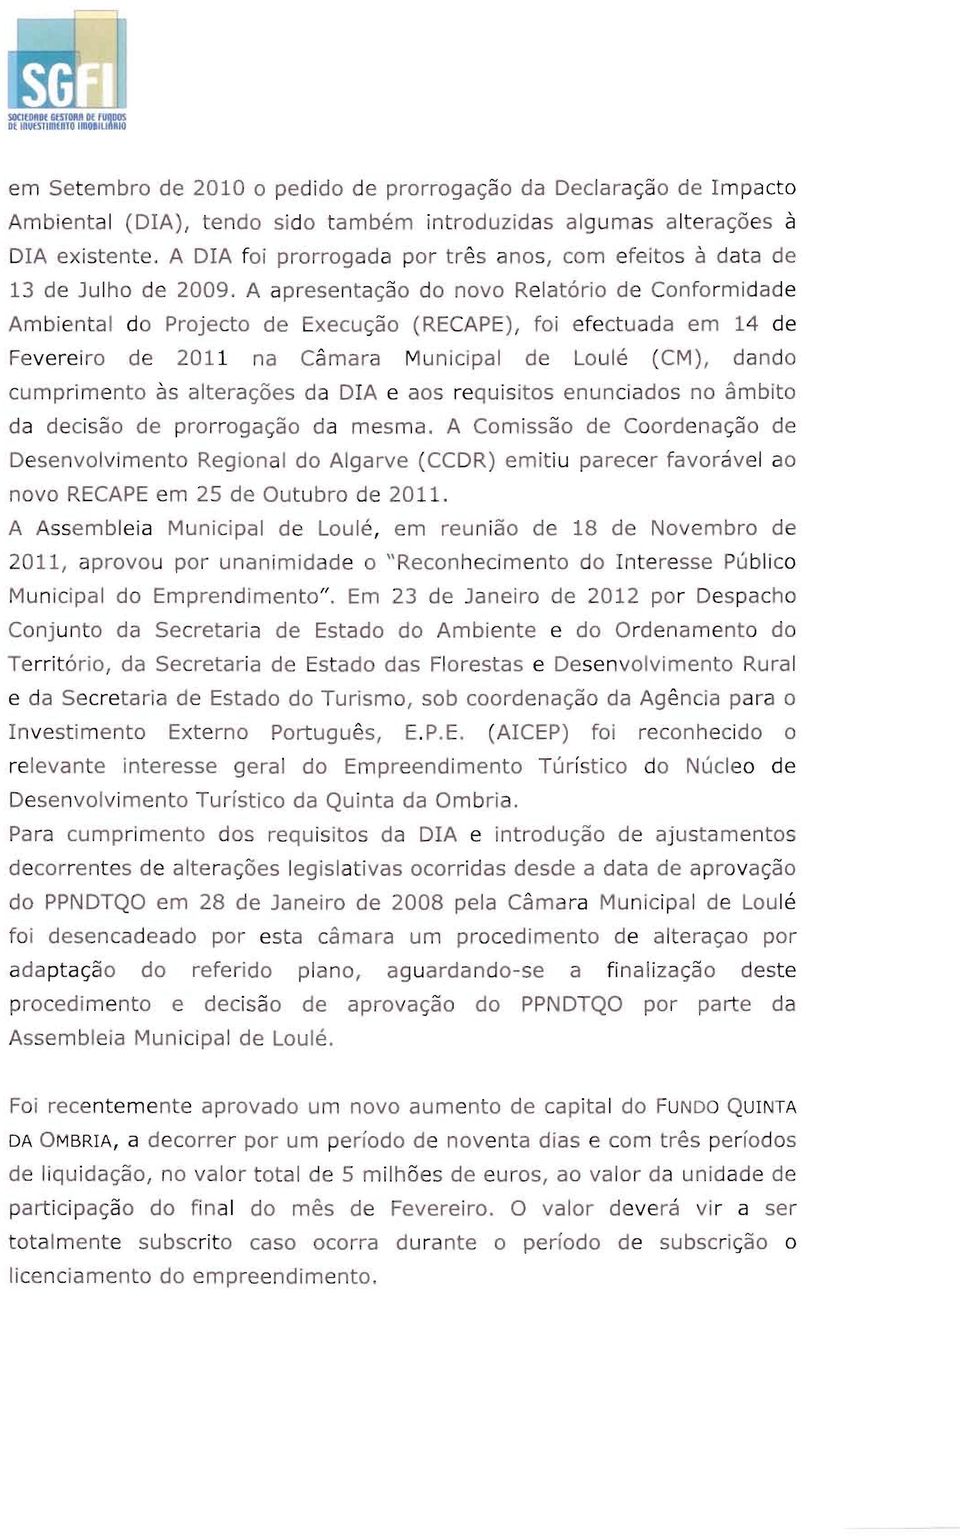 A apresentação do novo Relatório de Conformidade Ambiental do Projecto de Execução (RECAPE), foi efectuada em 14 de Fevereiro de 2011 na Câmara Municipal de Loulé (CM), dando cumprimento às